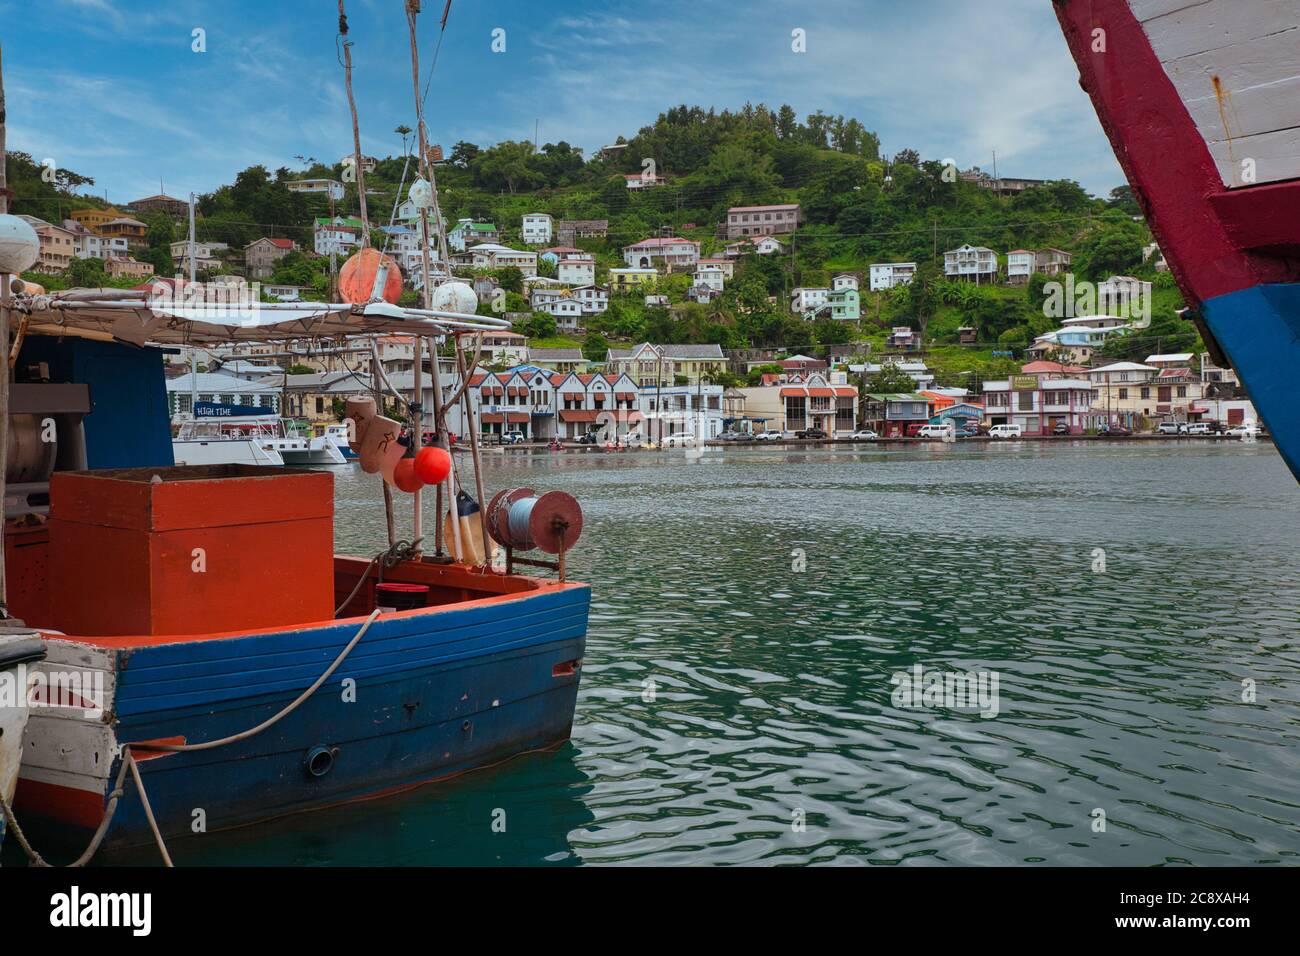 Mit Blick auf den Hafen und die Uferpromenade von St. George's mit kleinen Booten und Häusern auf den Hügeln dahinter, Grenada Insel, die Karibik Stockfoto